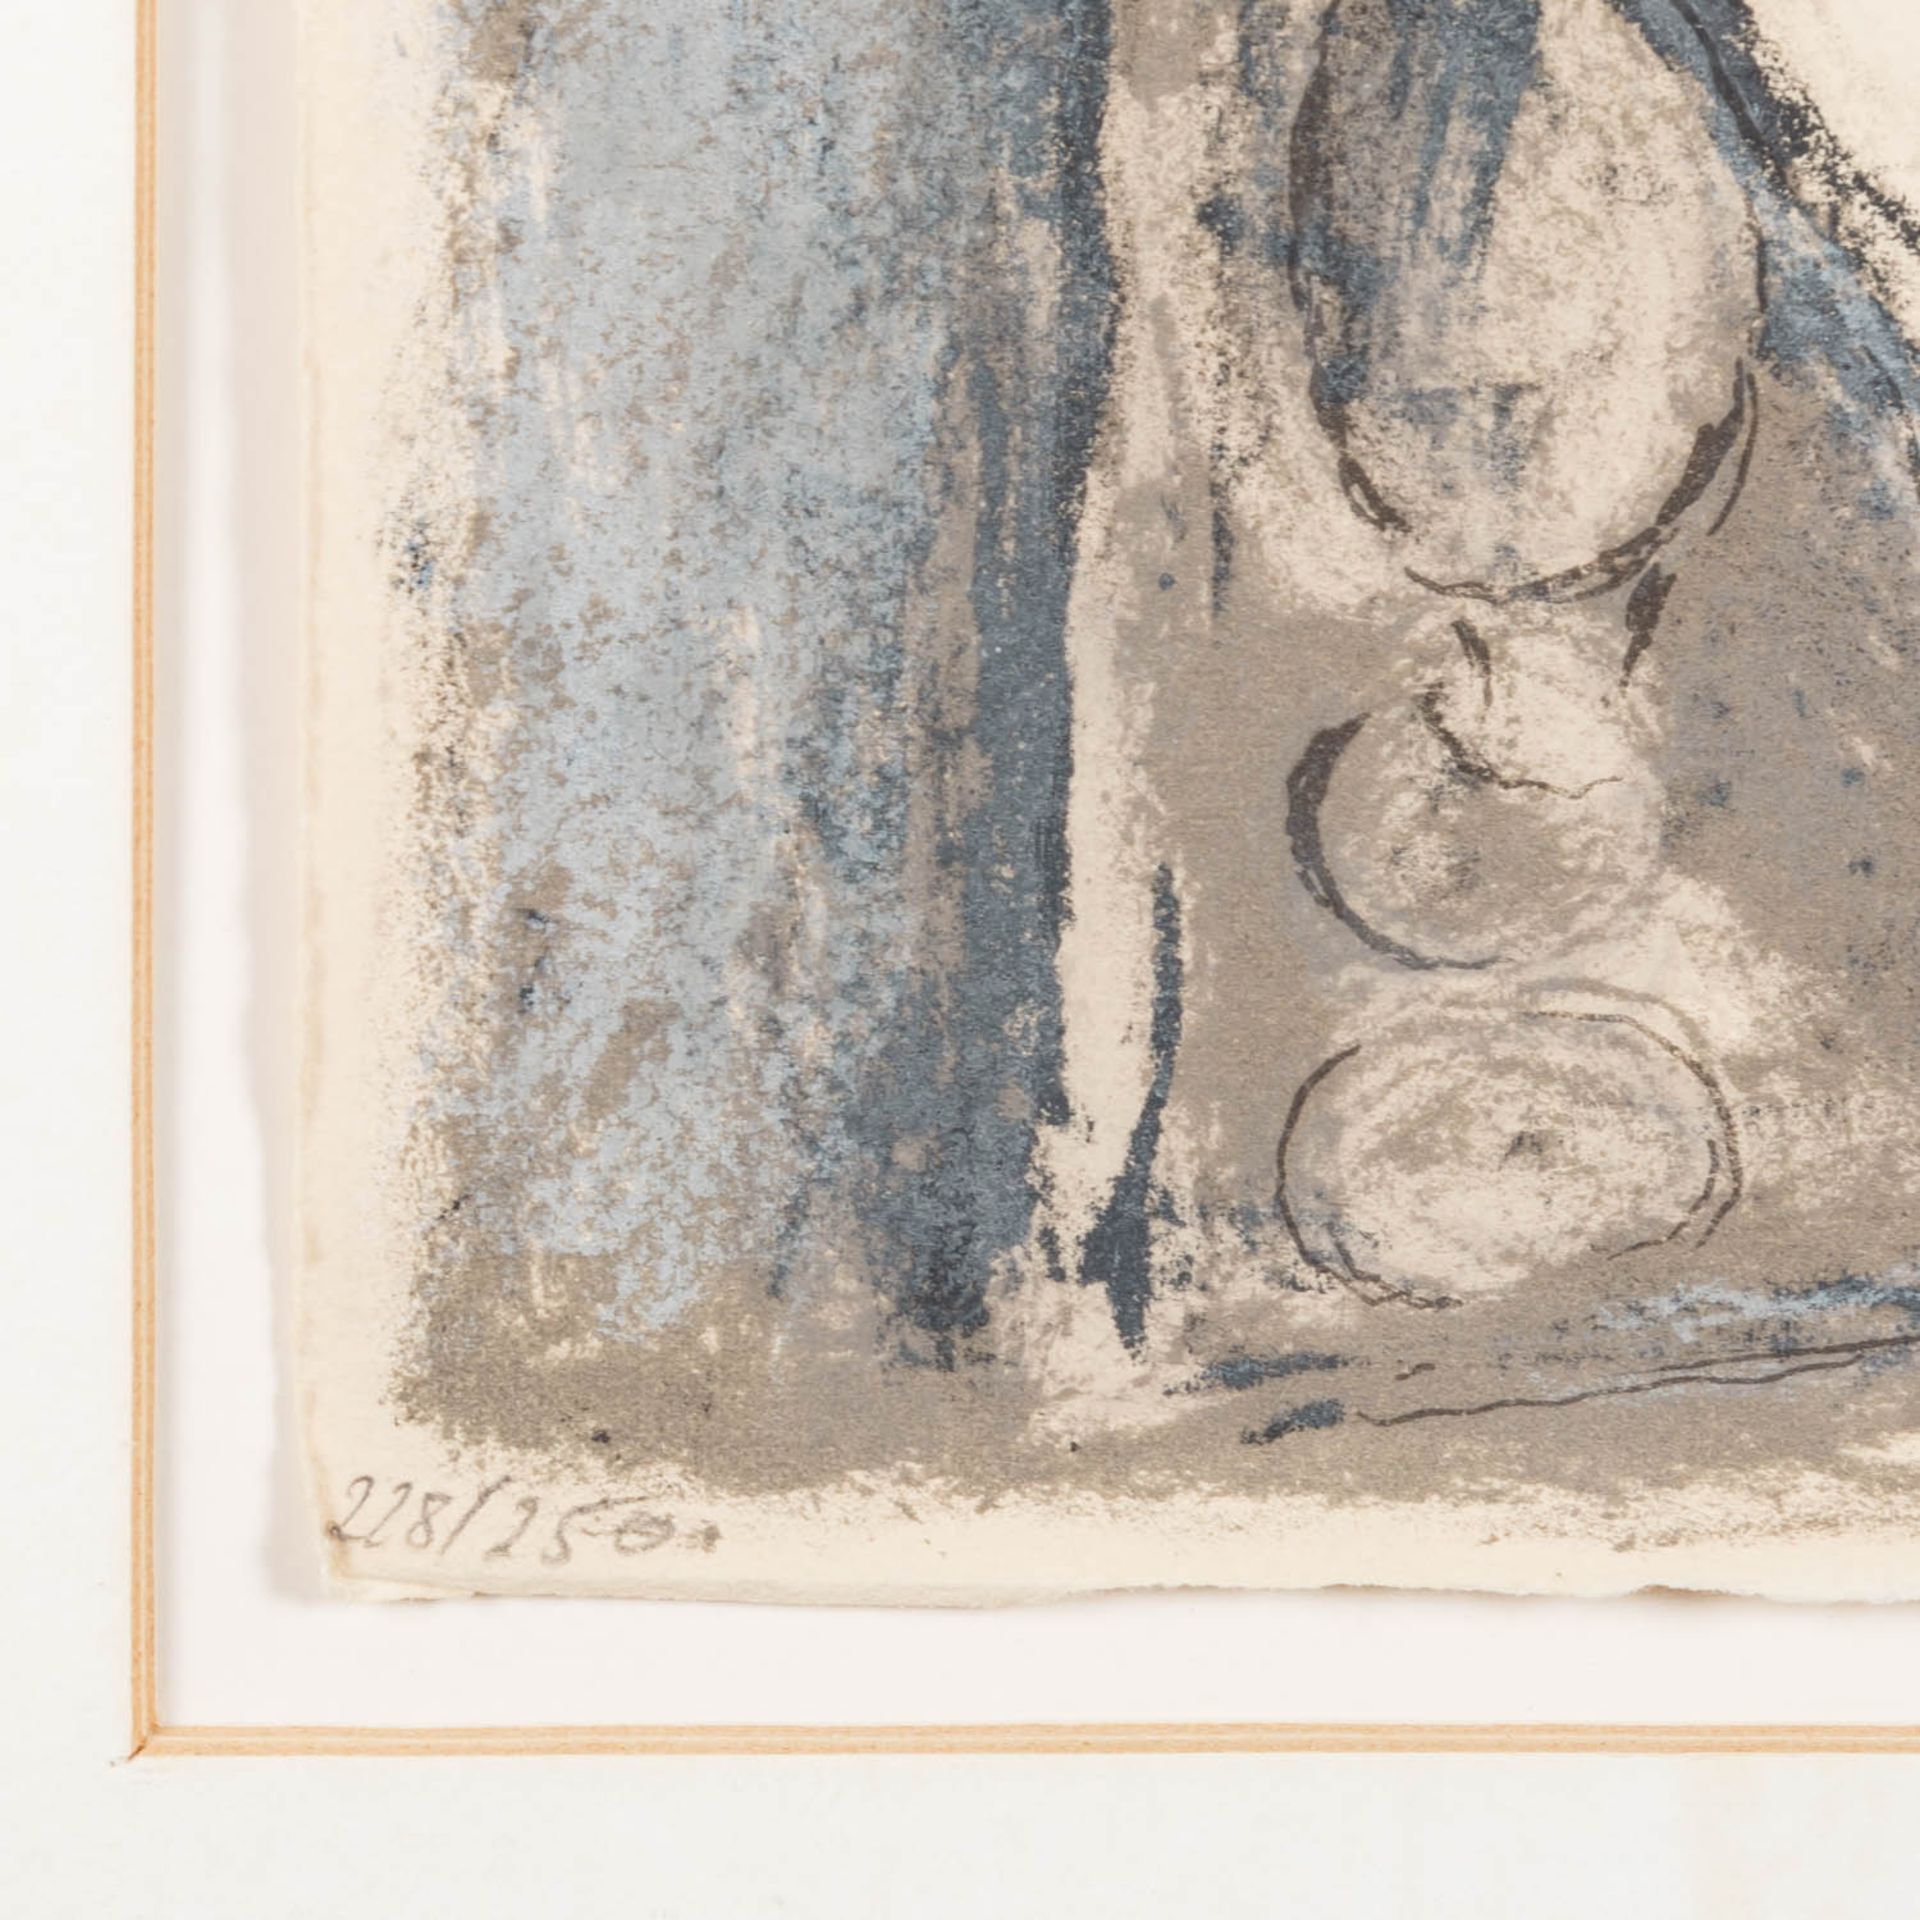 CHAGALL, MARC (1887-1985), Frontispiz zu Homers "Odyssee", - Bild 3 aus 8